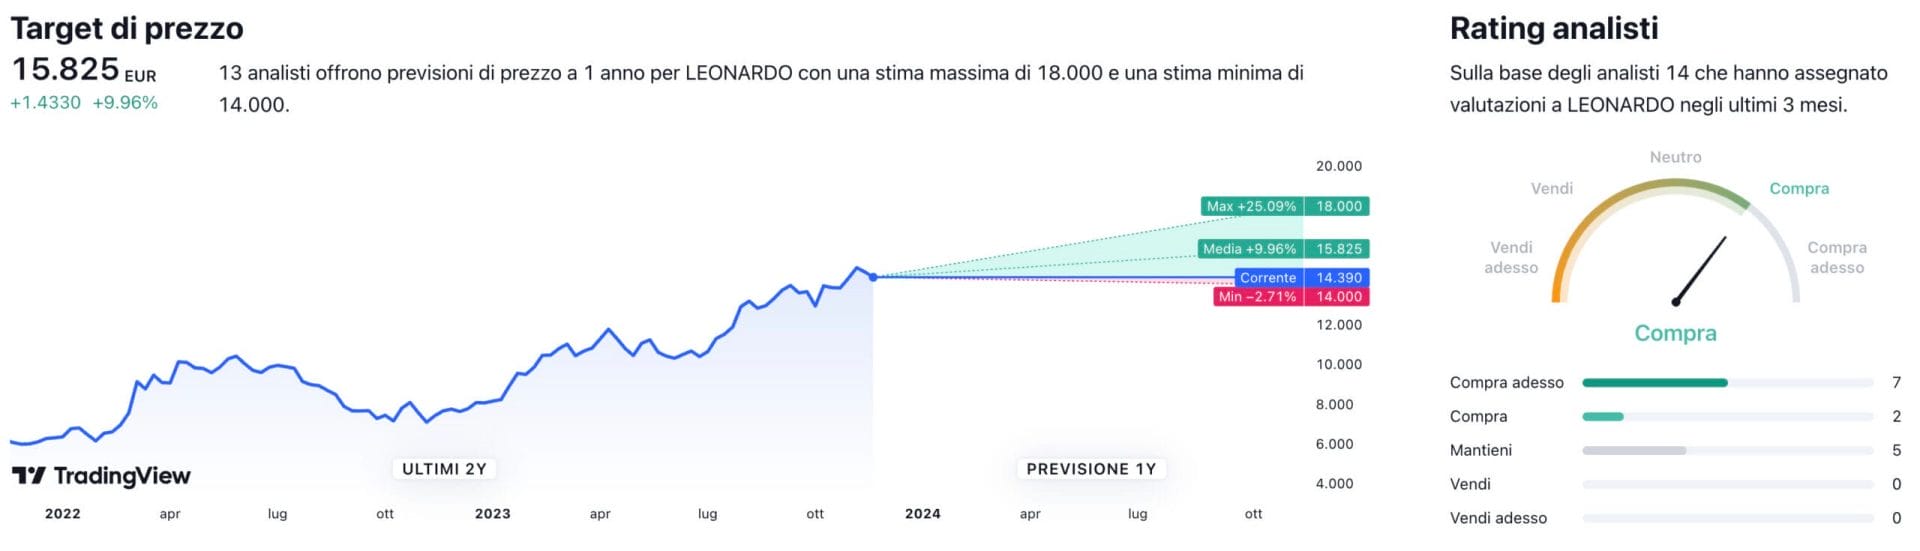 Target di prezzo a un anno e raccomandazioni degli analisti per il titolo Leonardo